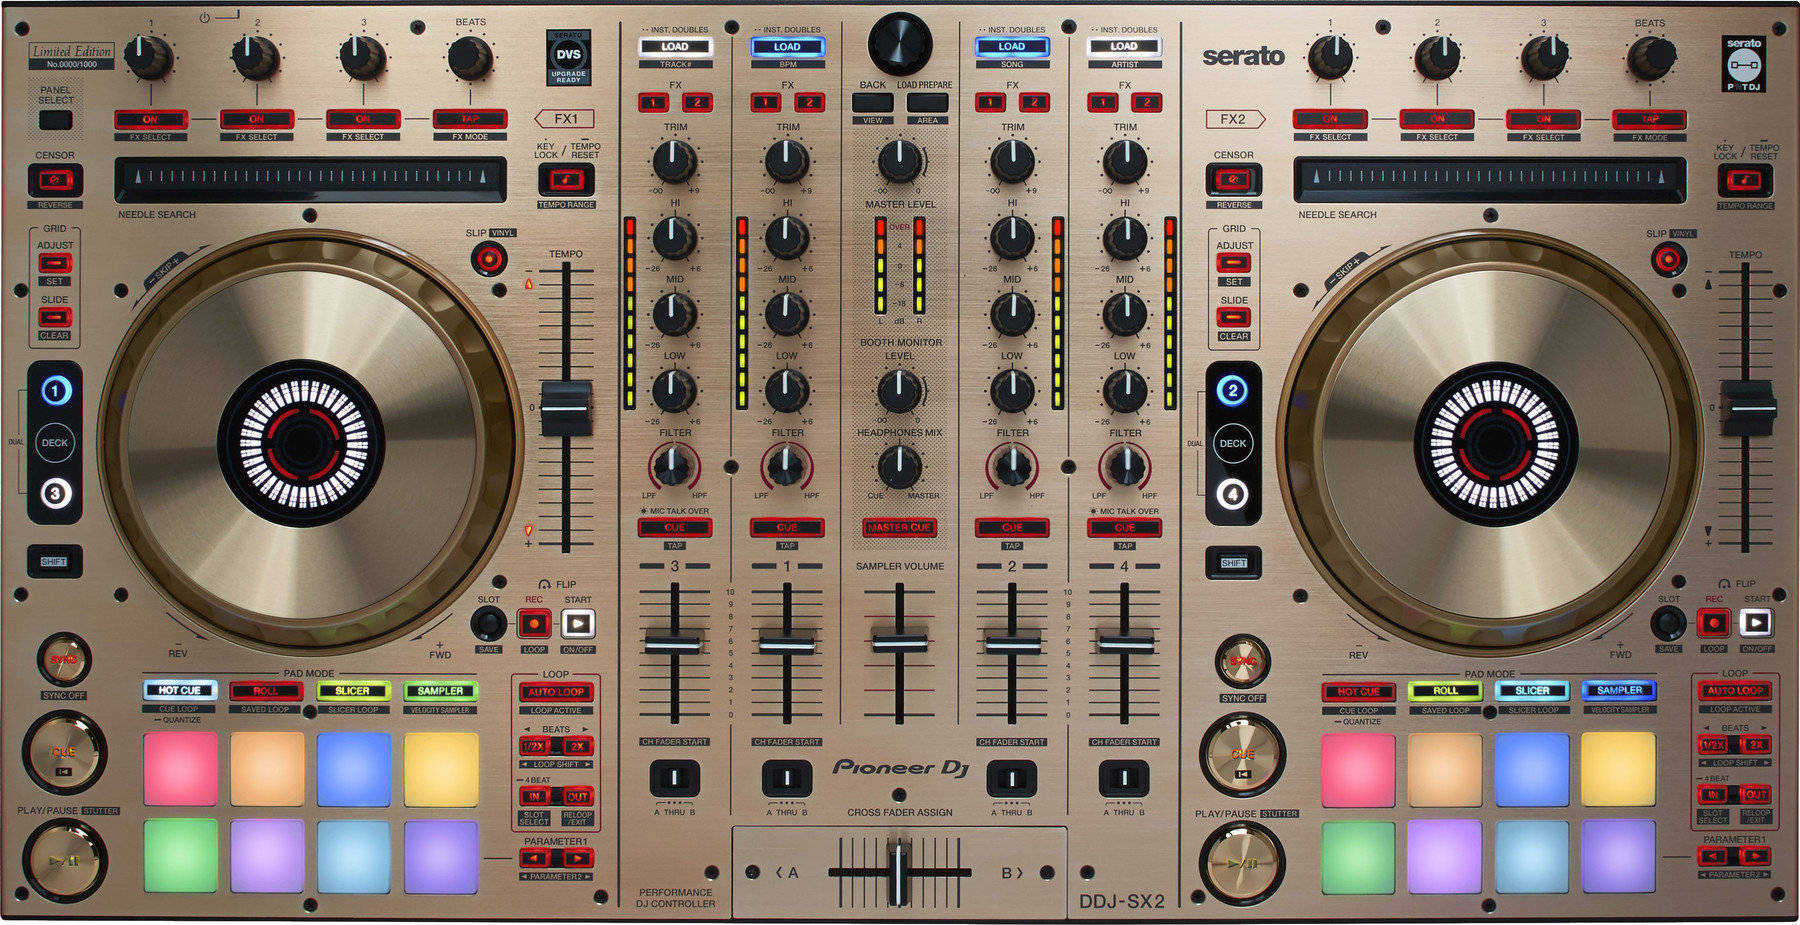 Controler DJ Pioneer Dj DDJ-SX2-N